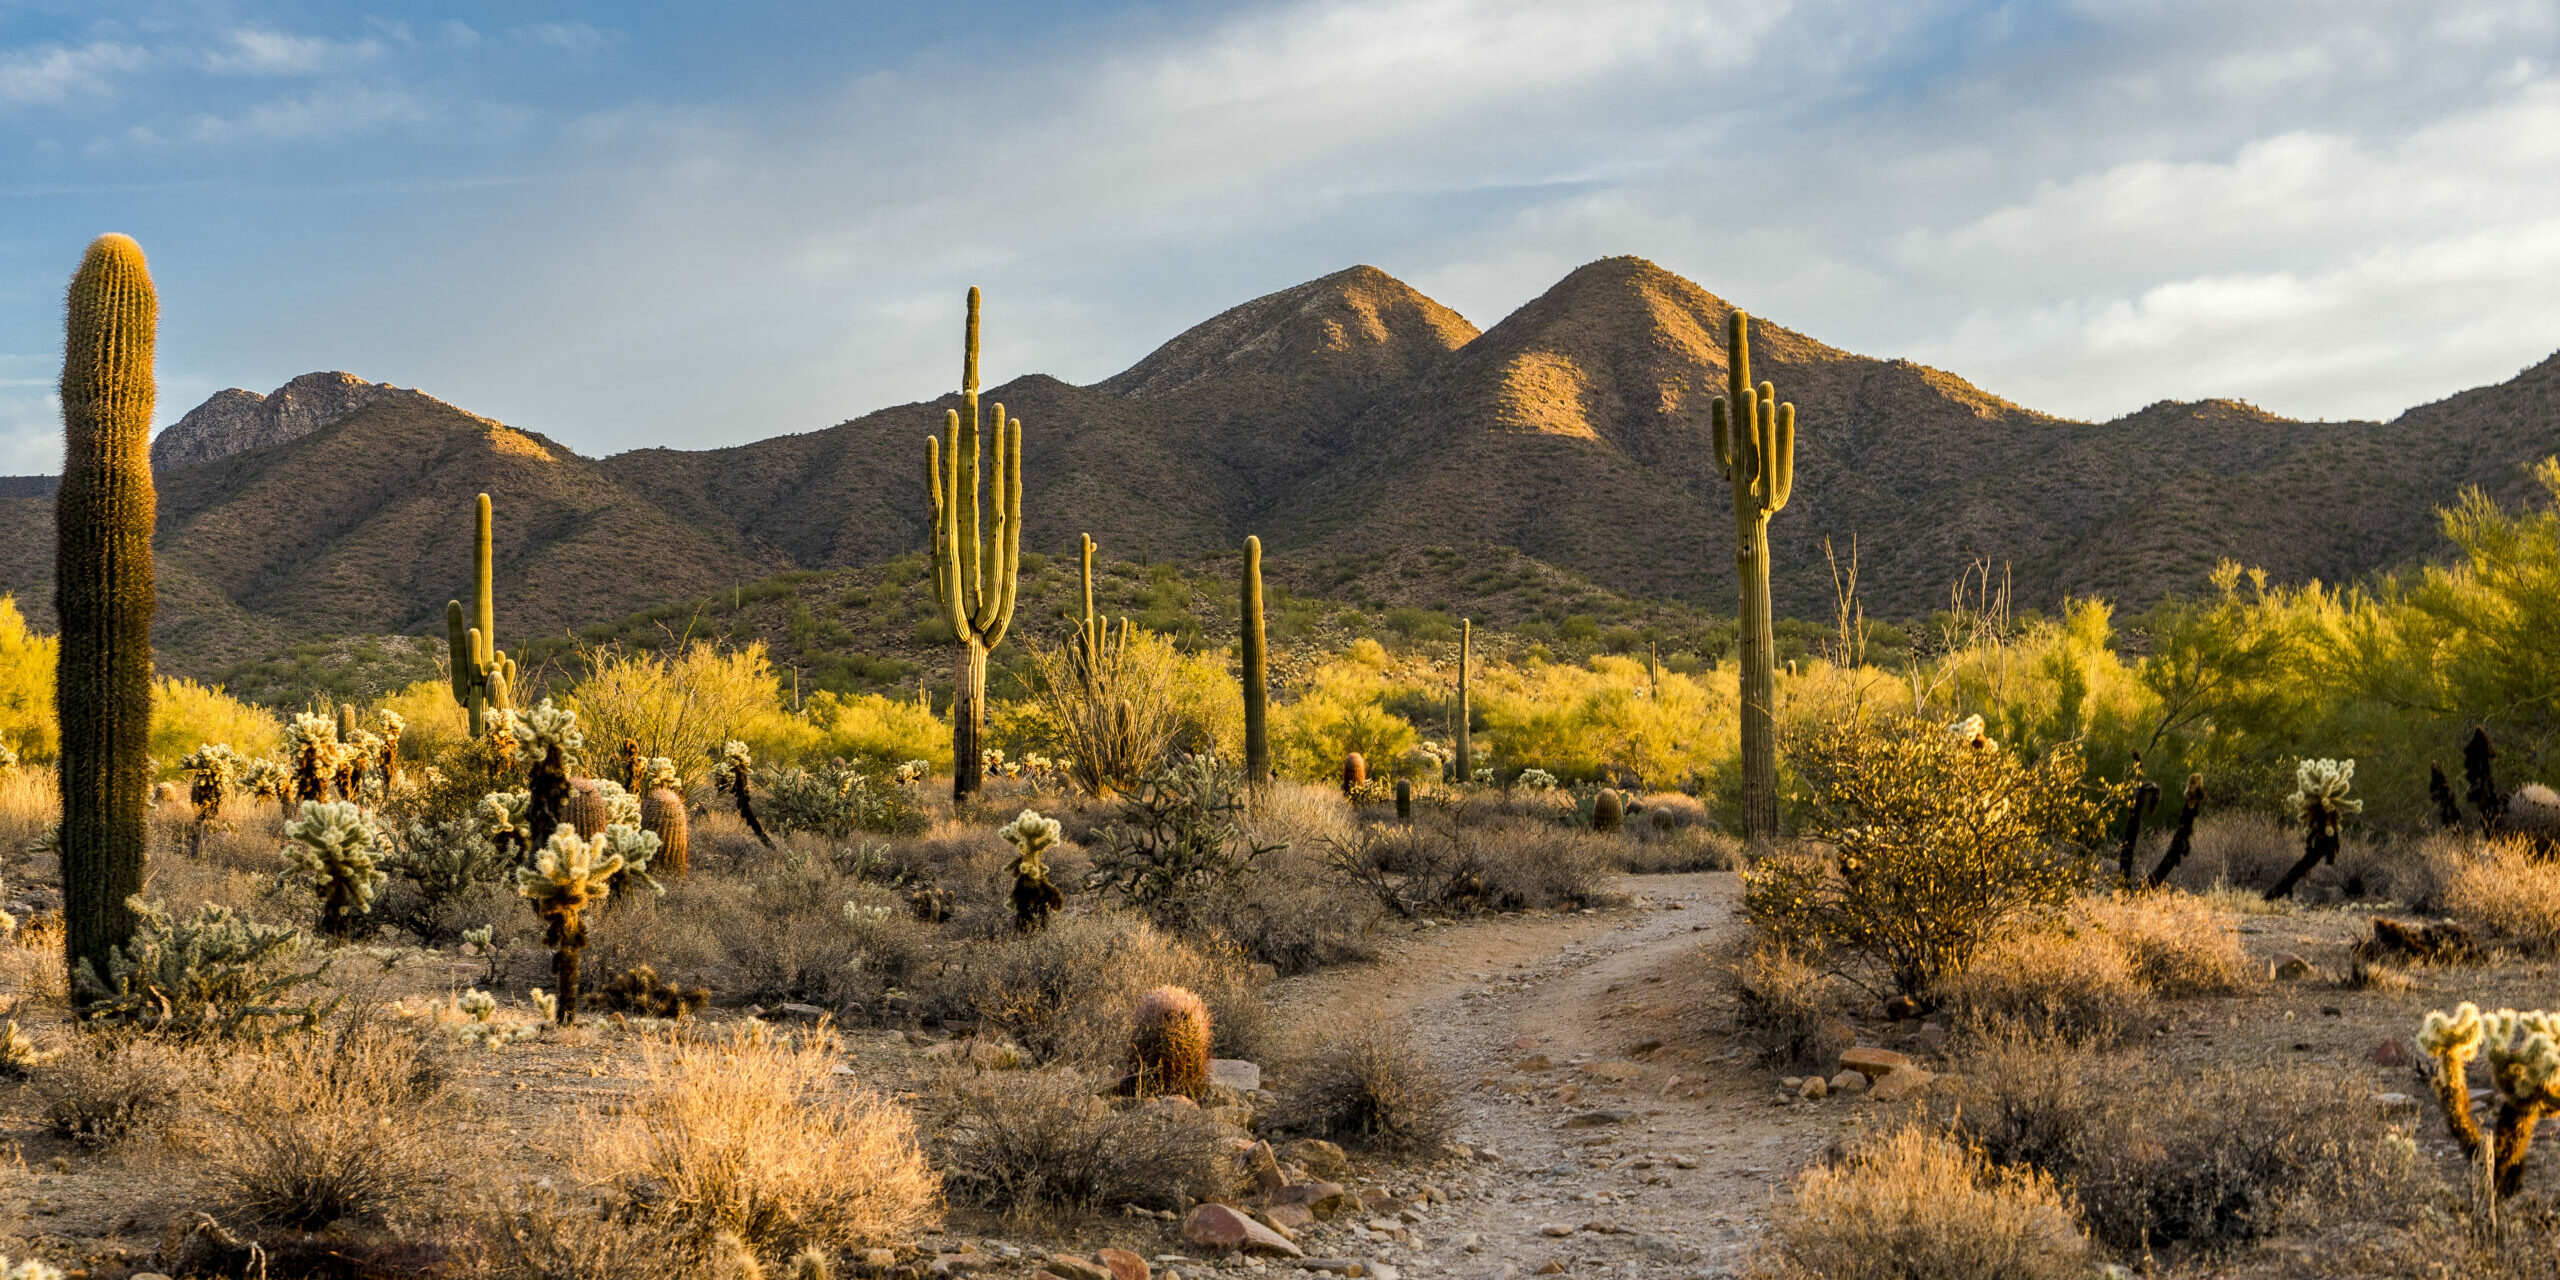 Morning light in the Sonoran desert in Scottsdale, Arizona